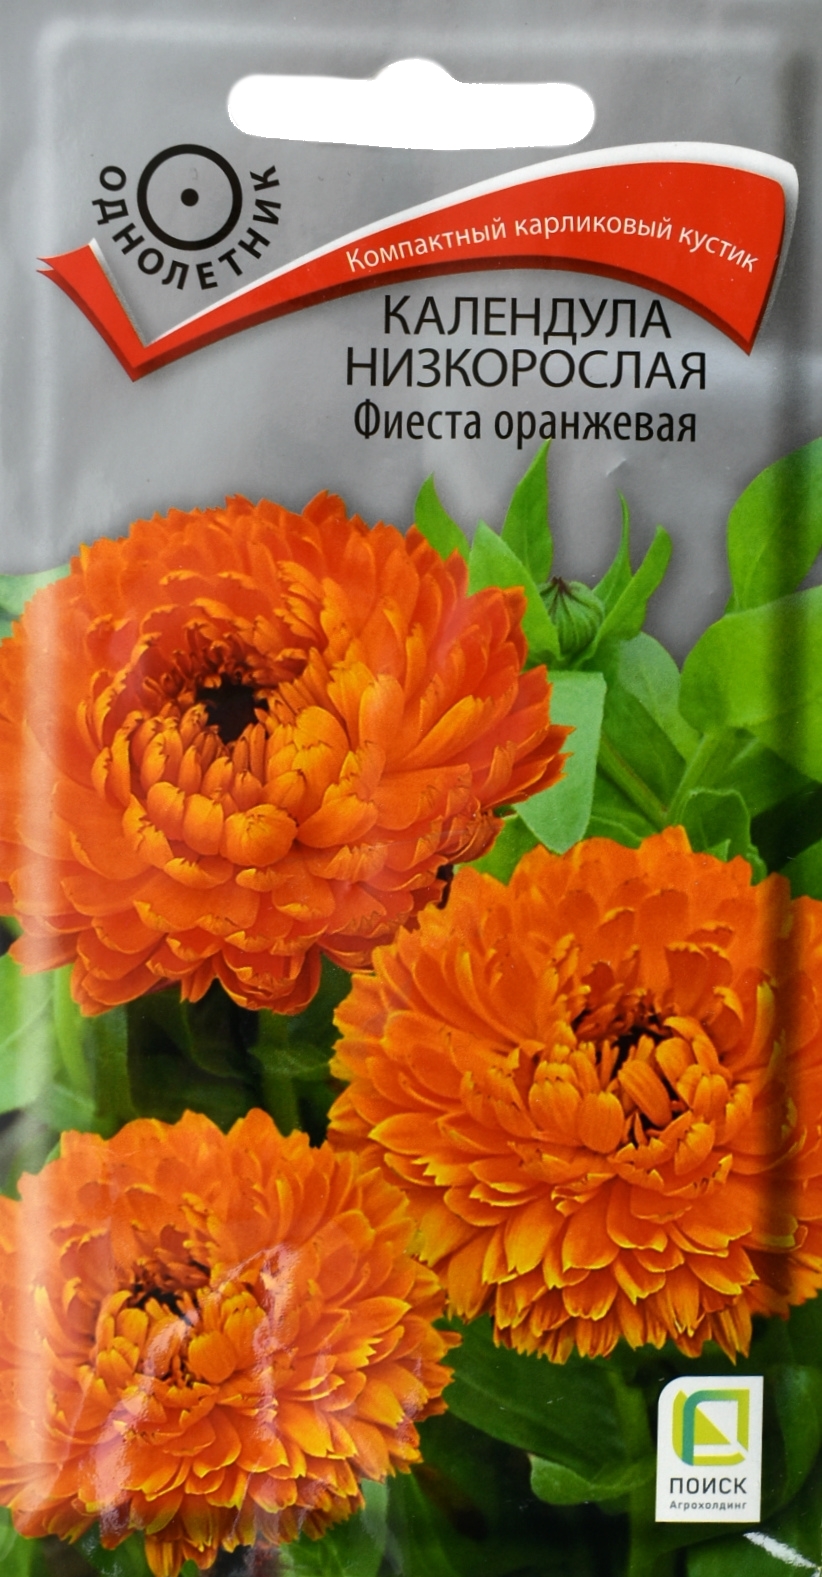 Семена "Календула низкорослая. Фиеста оранжевая" (вес: 0,3 грамма)